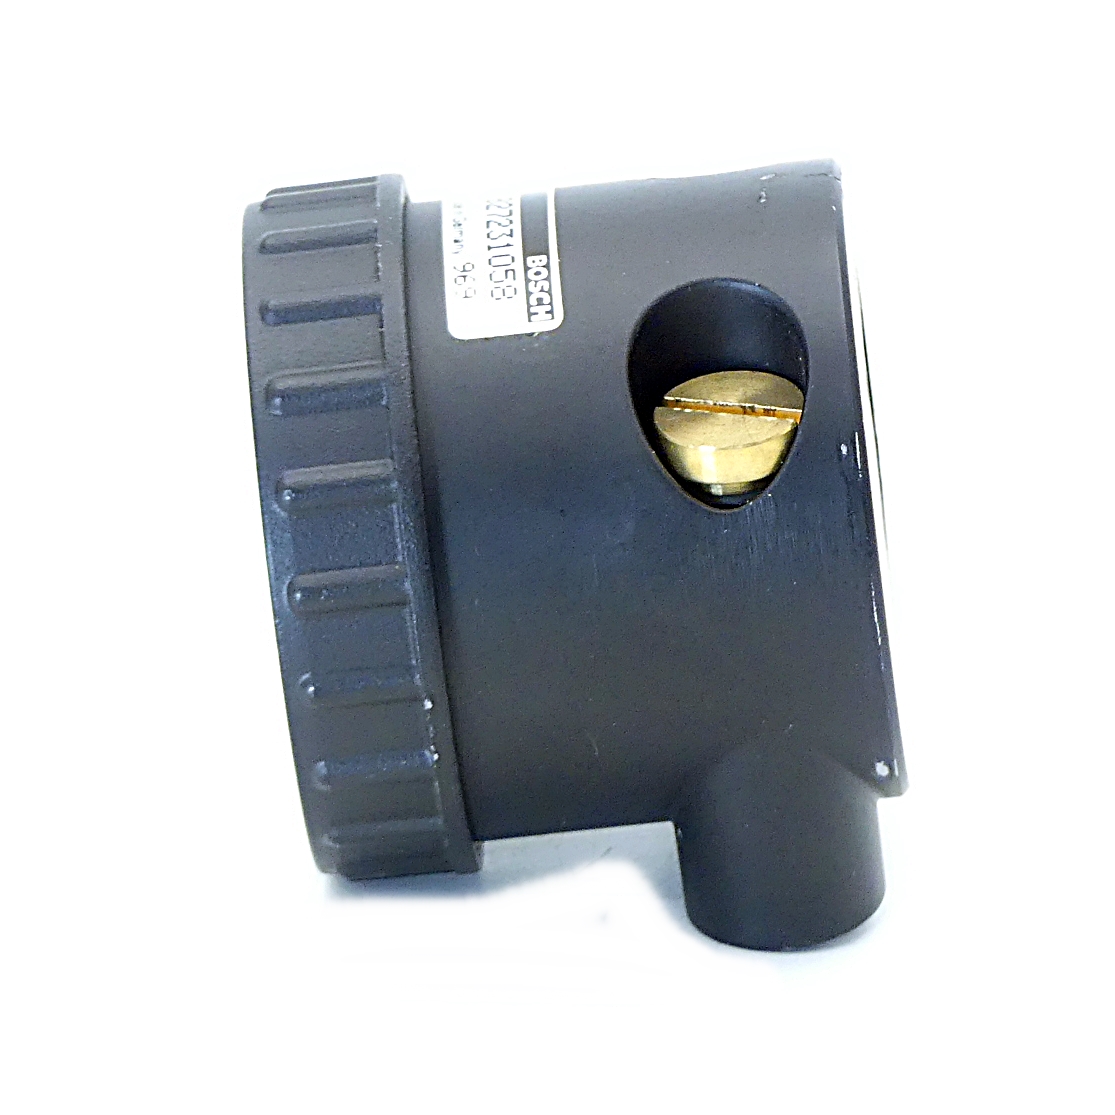 Pressure indicator, differential pressure meter 